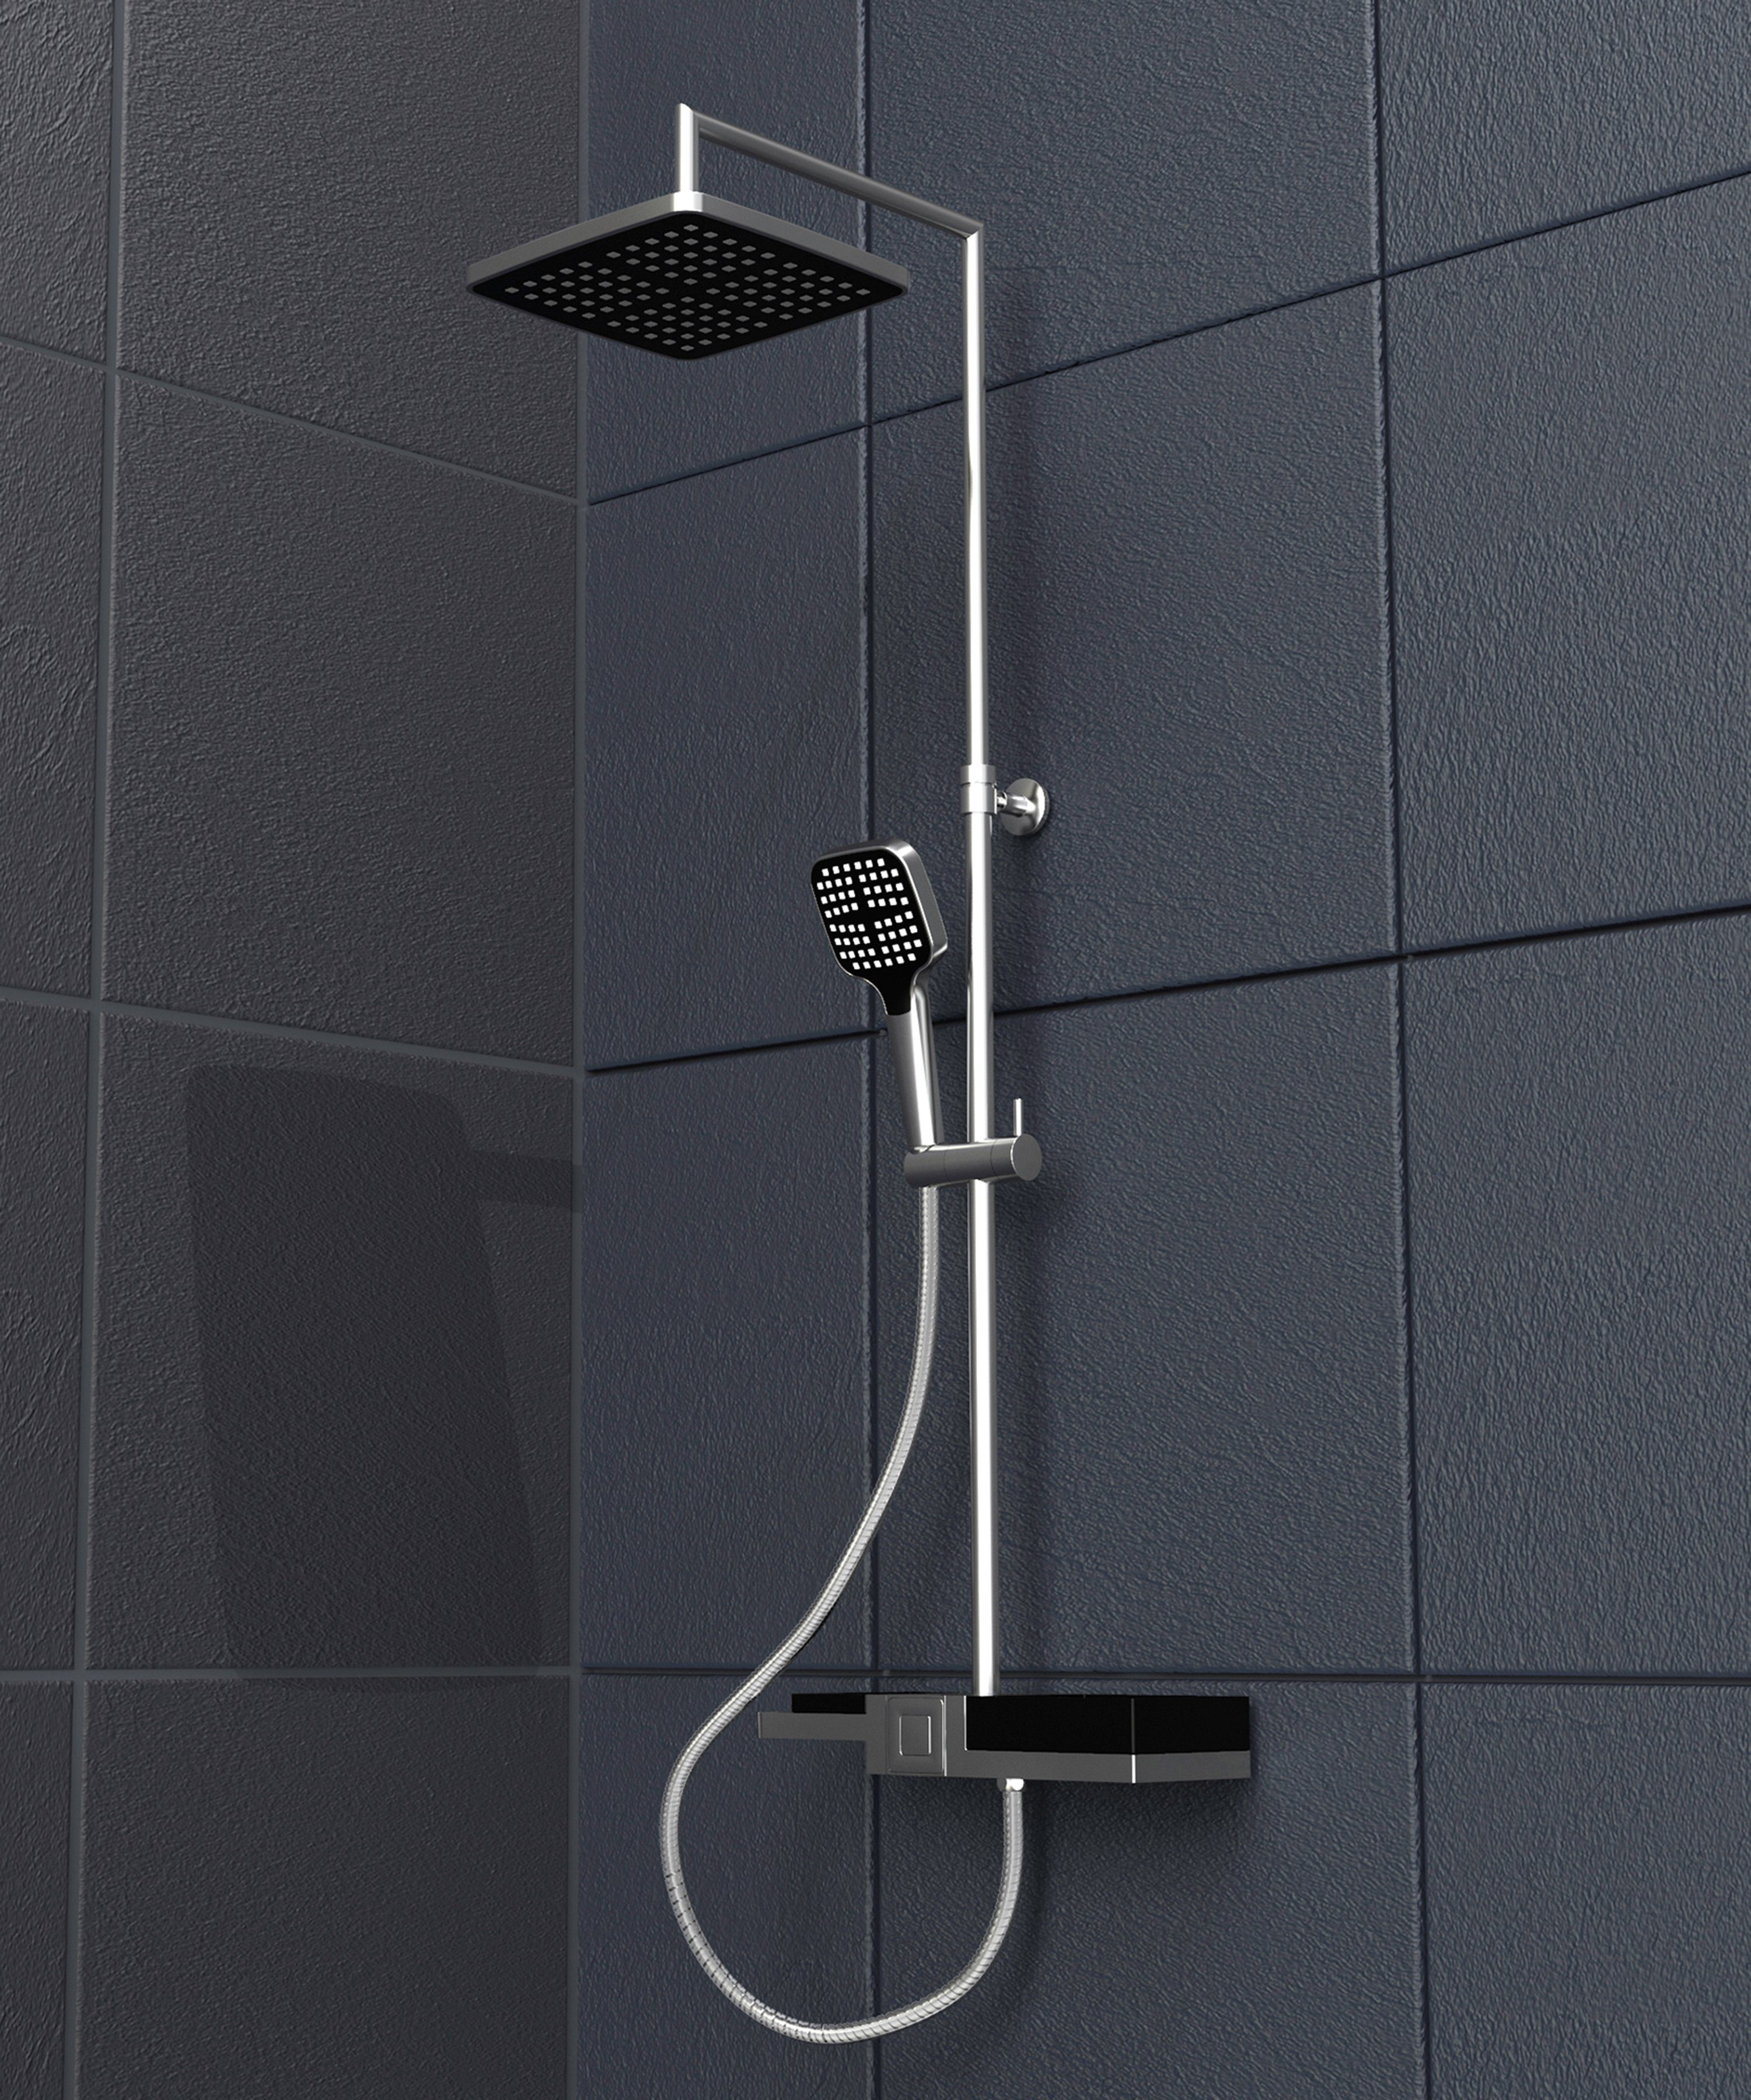 Duschsystem Schütte mit Regendusche modularem Ablagesystem, Duschsystem Duschbrause BLUEPERL, und